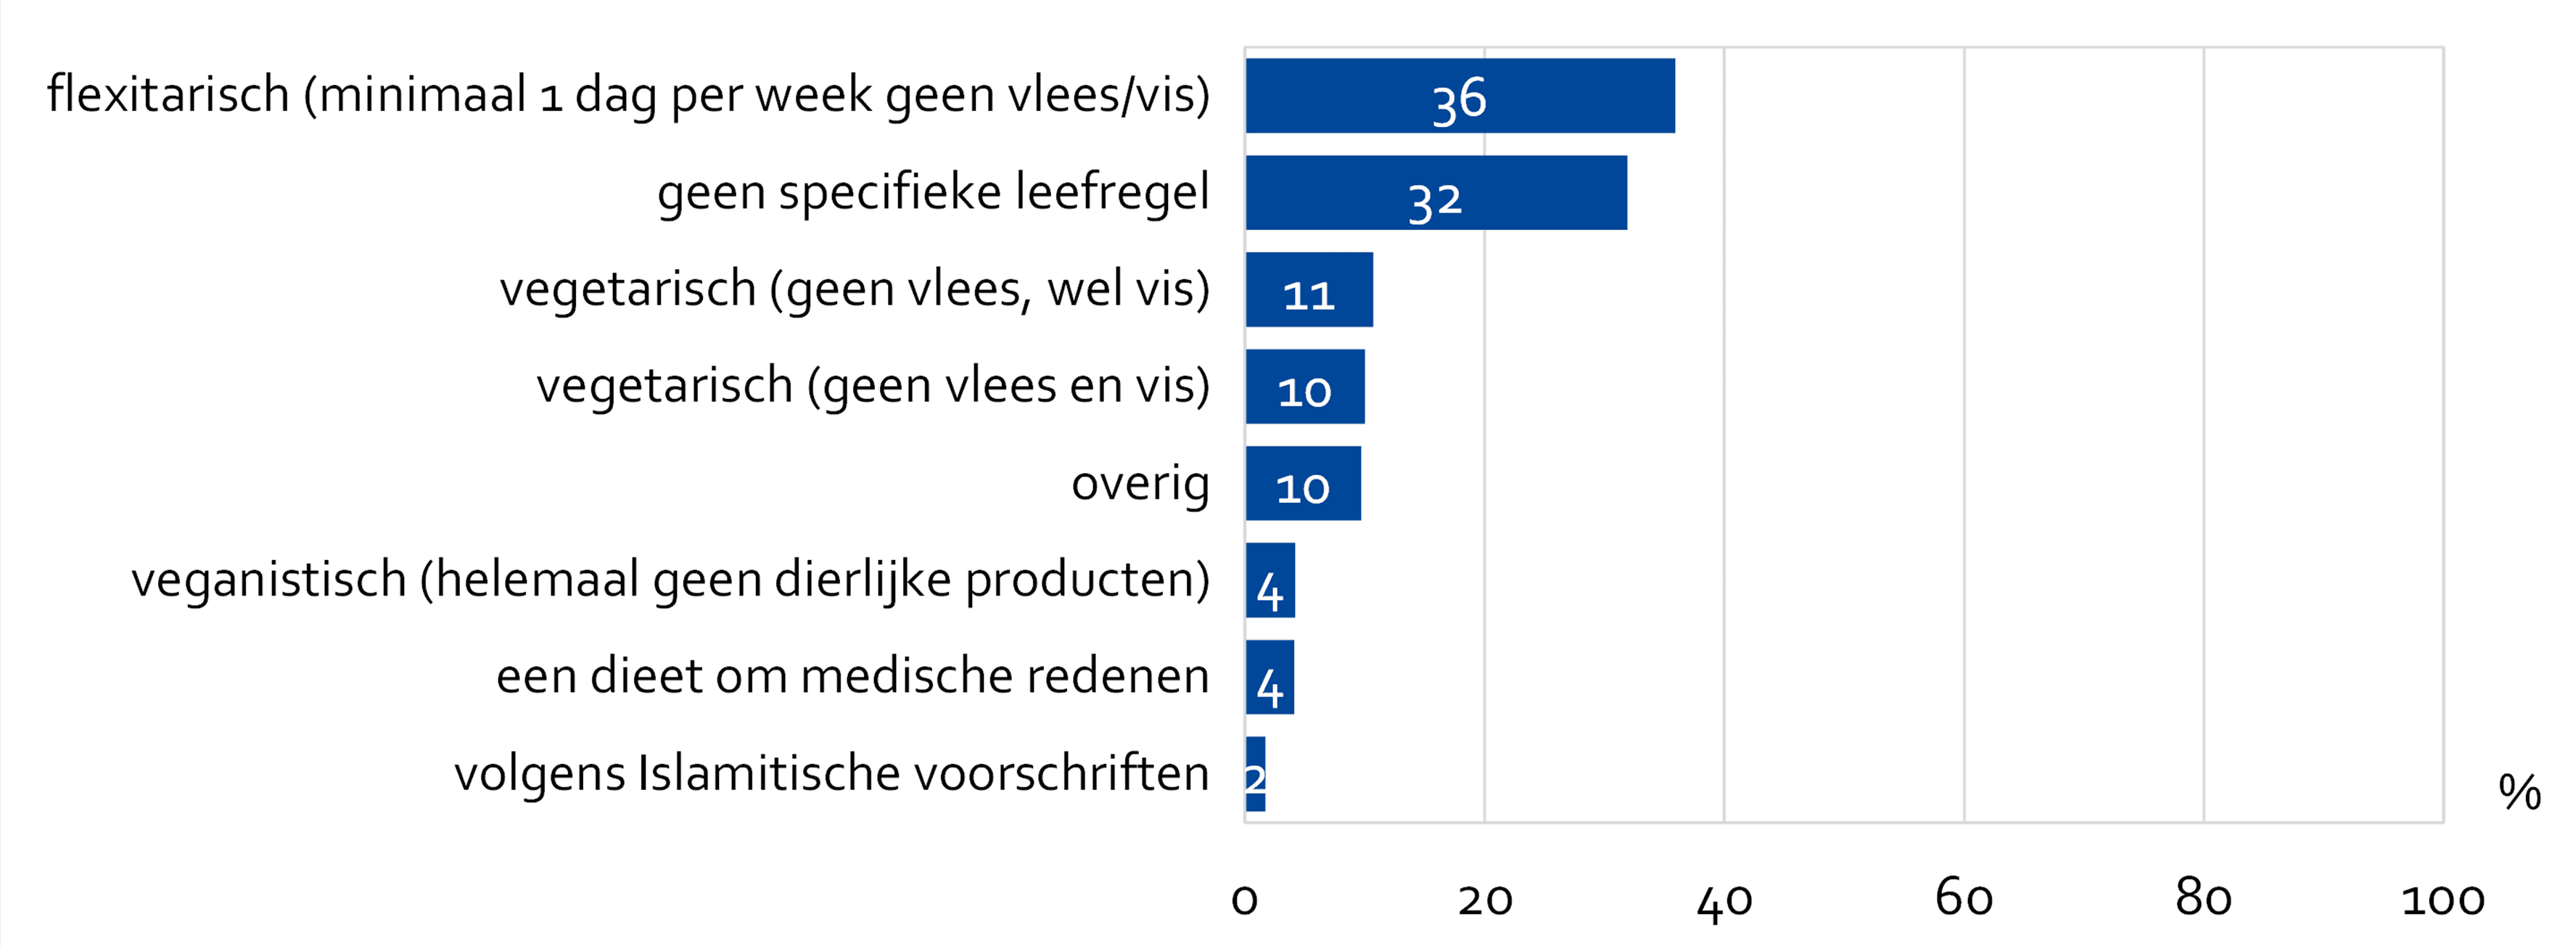 Aandeel Amsterdammers dat bepaalde leefregels volgt als het gaat om eten. 36% geeft aan flexitarisch te eten, 11% geeft aan vegetarisch te eten, 10% geeft aan vegetarisch te eten en 4% geeft aan veganistisch te eten.